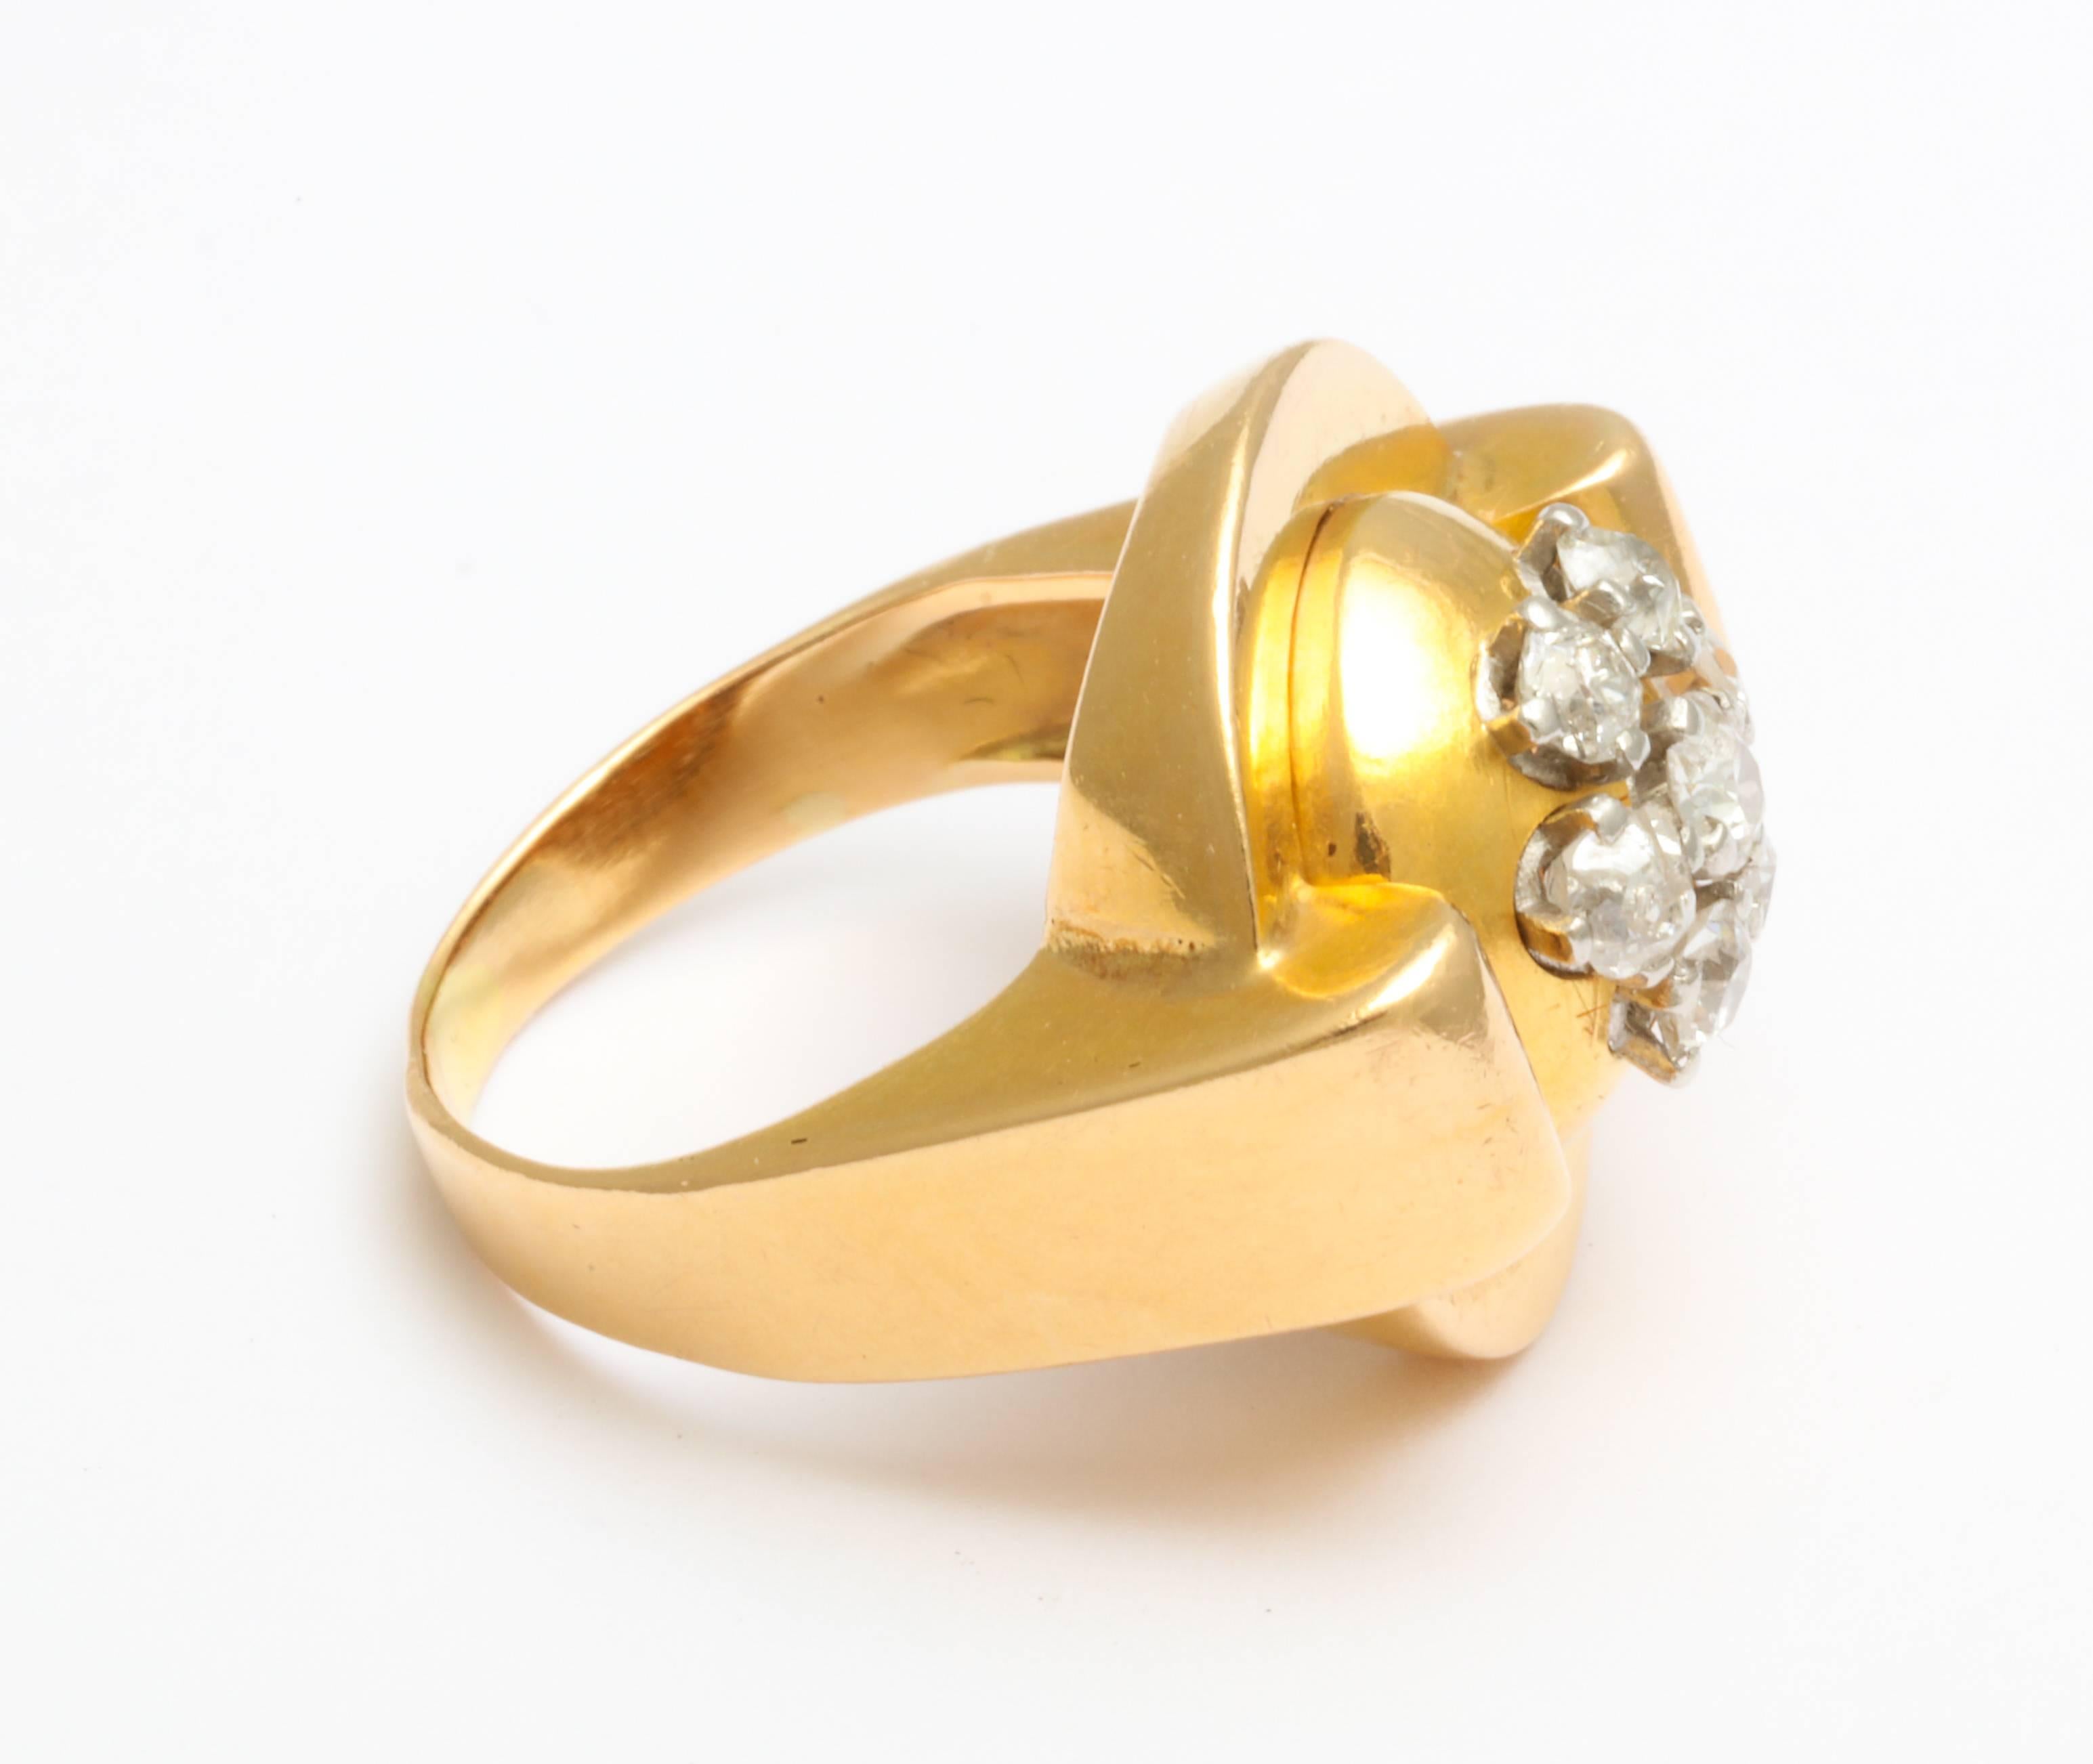 Bague rétro classique en or français 18 carats avec un groupement de cinq diamants taille mine flanqués de contreforts qui protègent les diamants montés et lui confèrent un aspect moderniste épuré très en phase avec la mode actuelle.